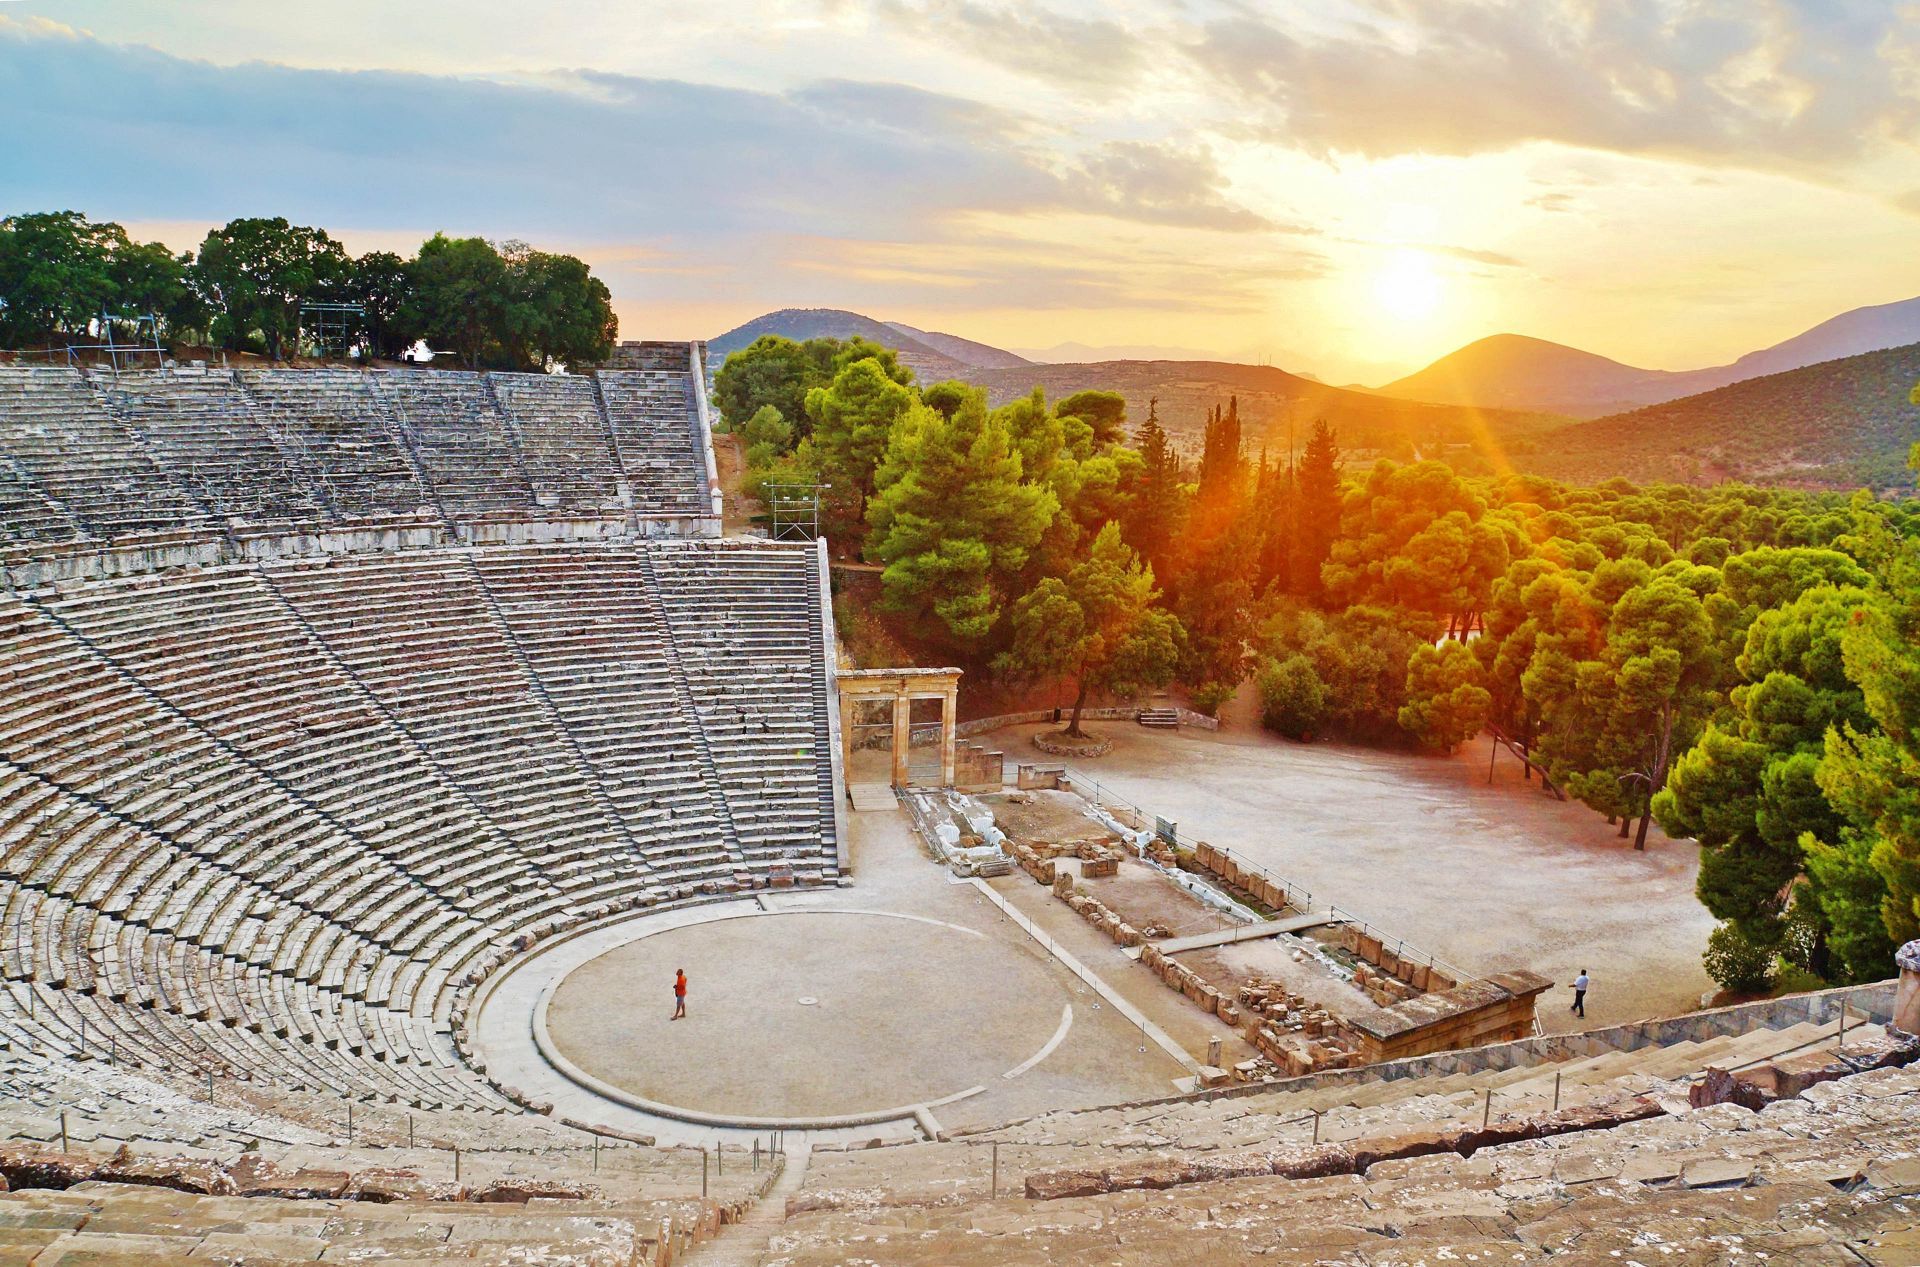 Epidaurus ancient city